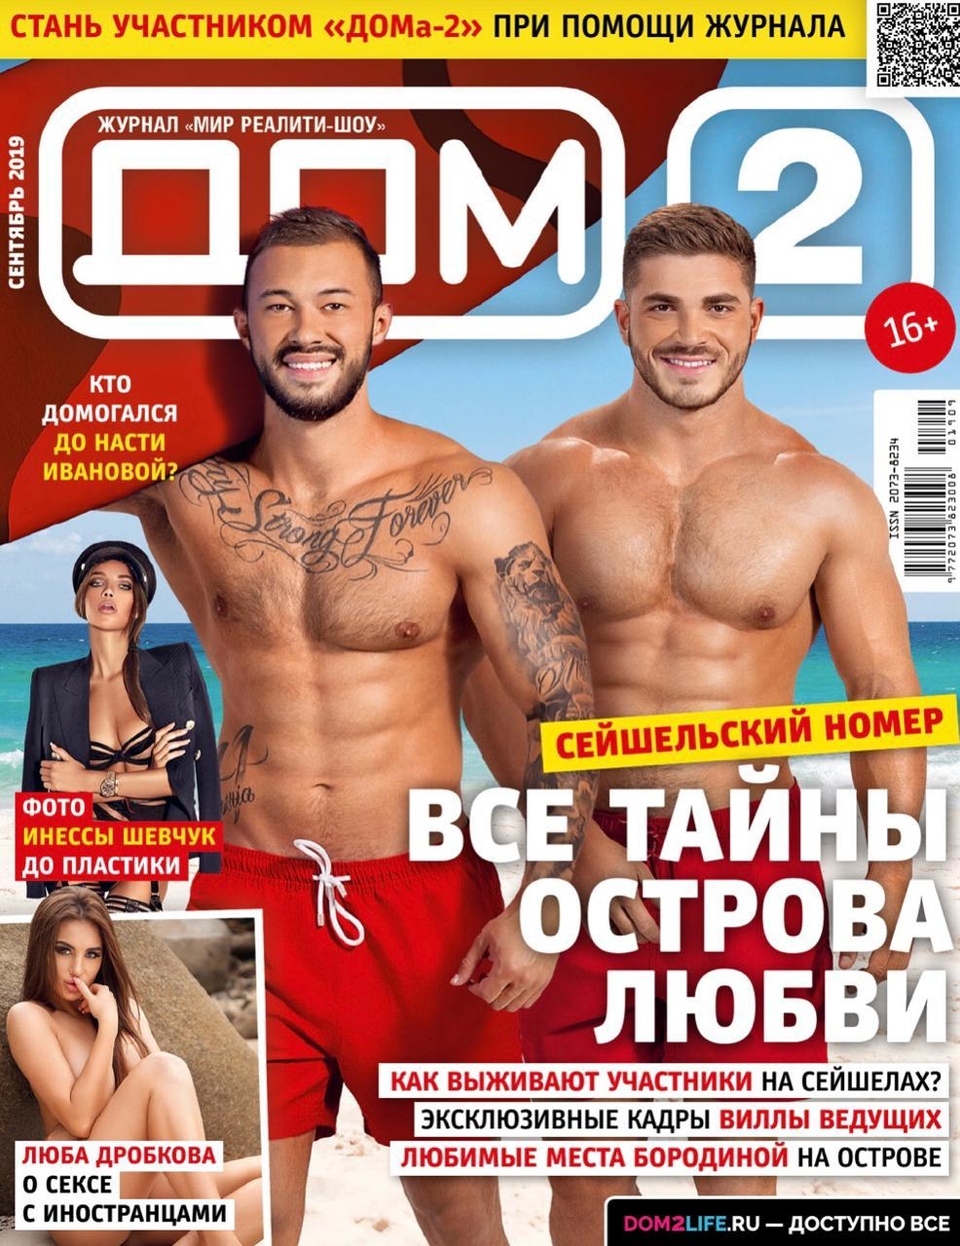 Свежий номер журнала уже в продаже! Фото: журнал «ДОМ−2» 